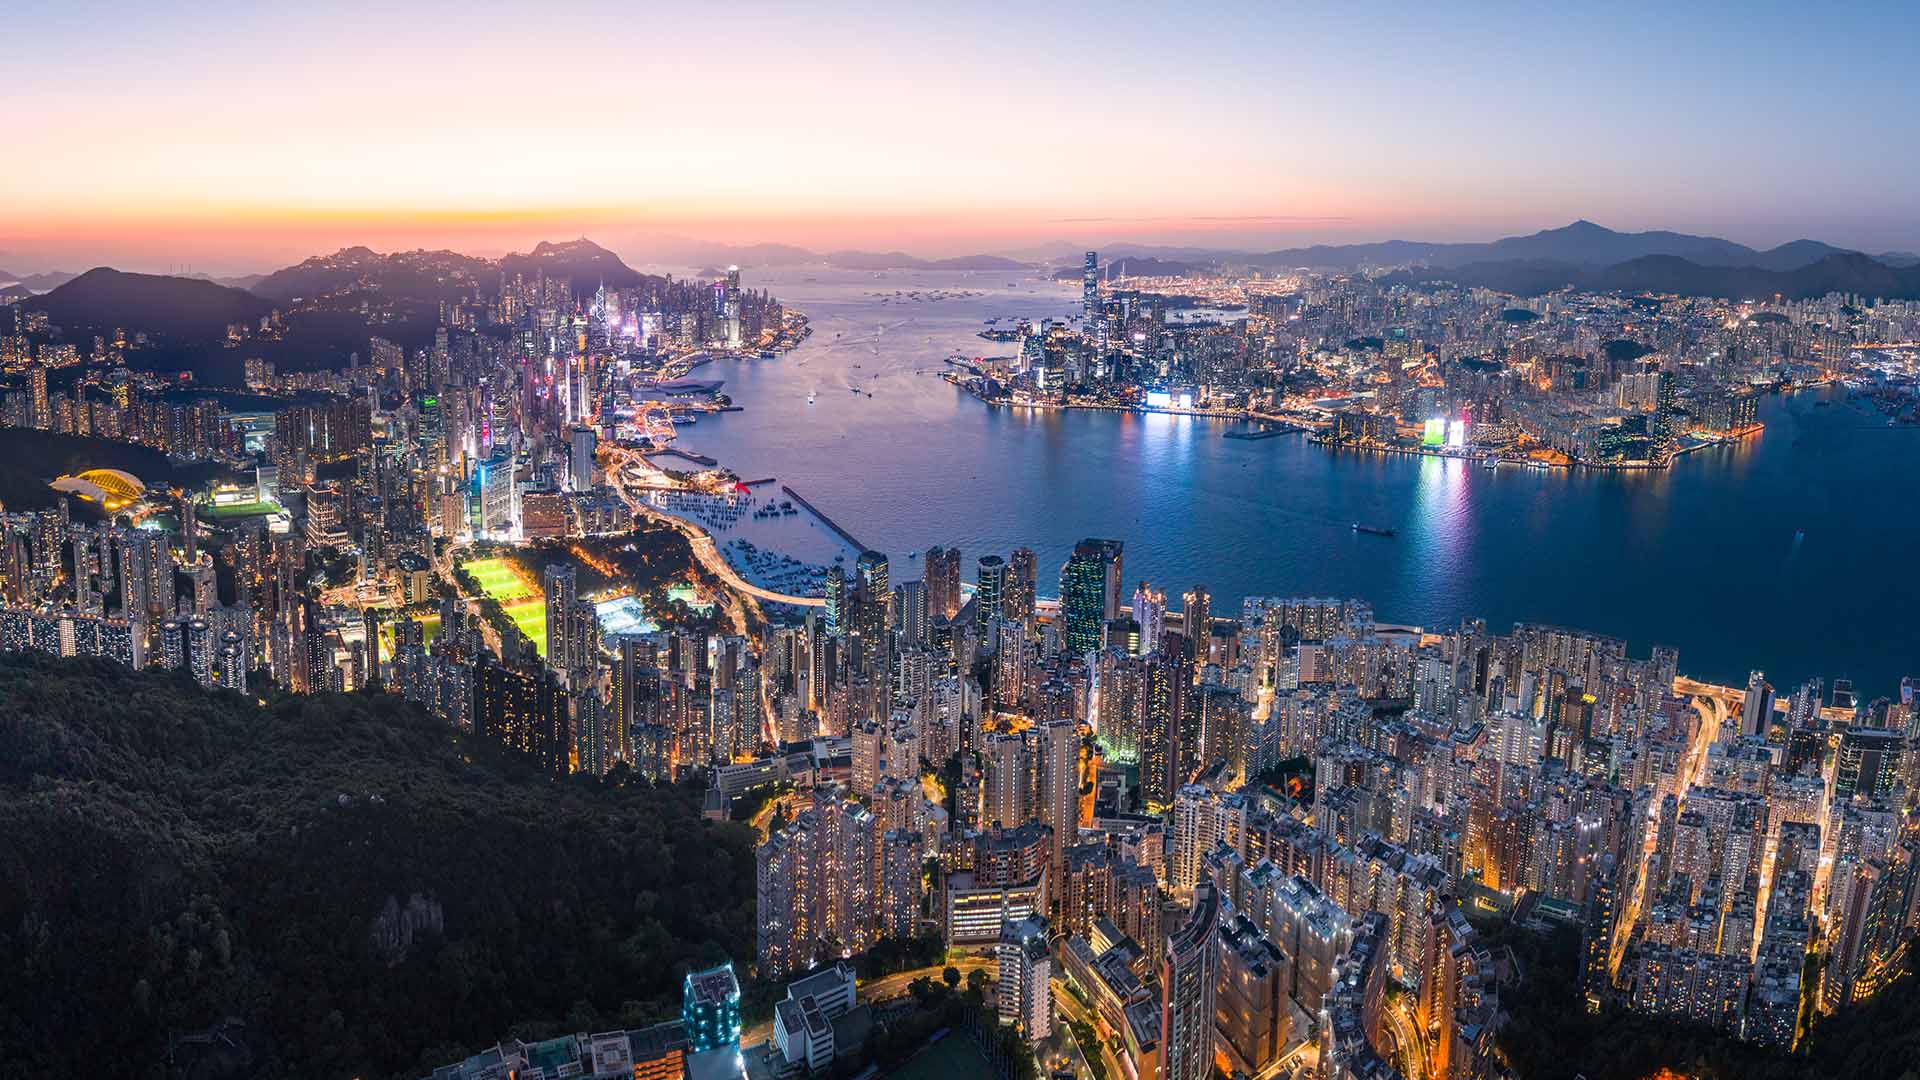 Top spots to enjoy Hong Kong’s night views | Hong Kong Tourism Board